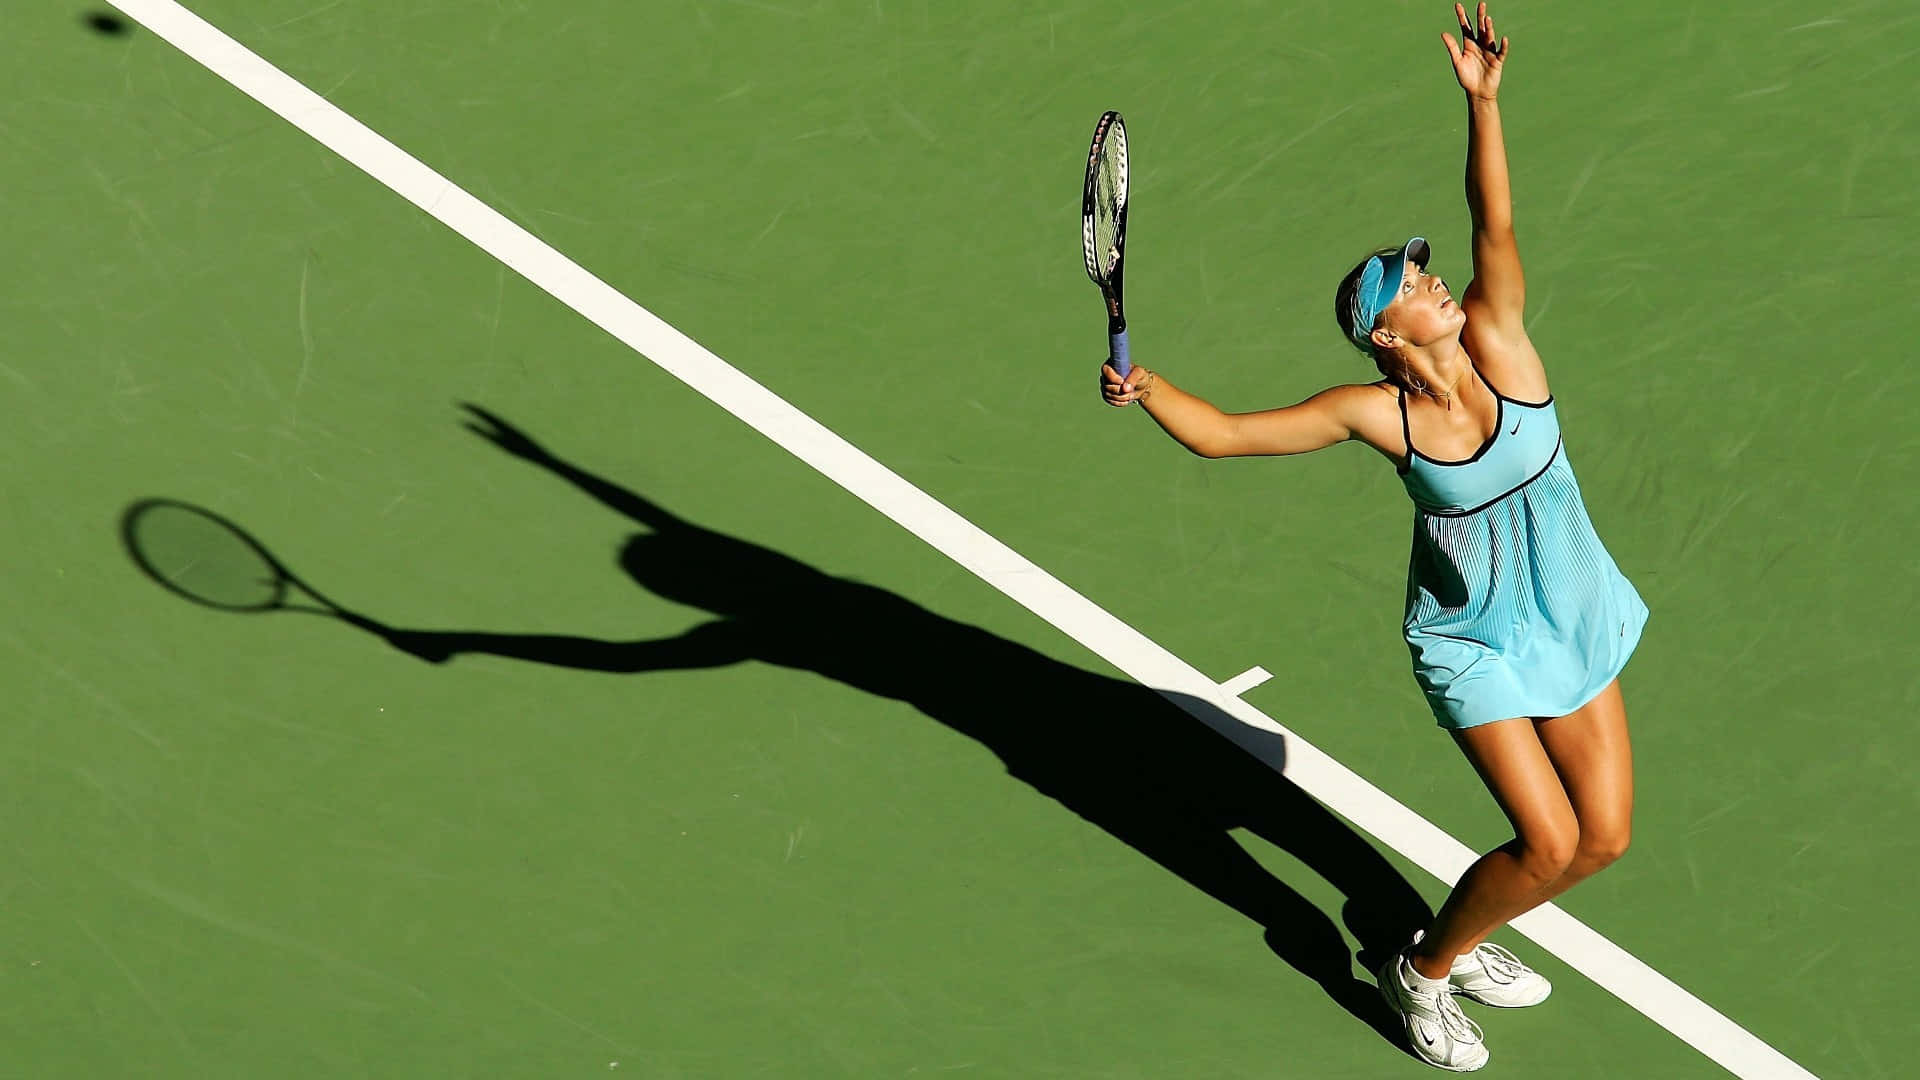 Hdhintergrundbild Der Russischen Tennisspielerin Maria Sharapova